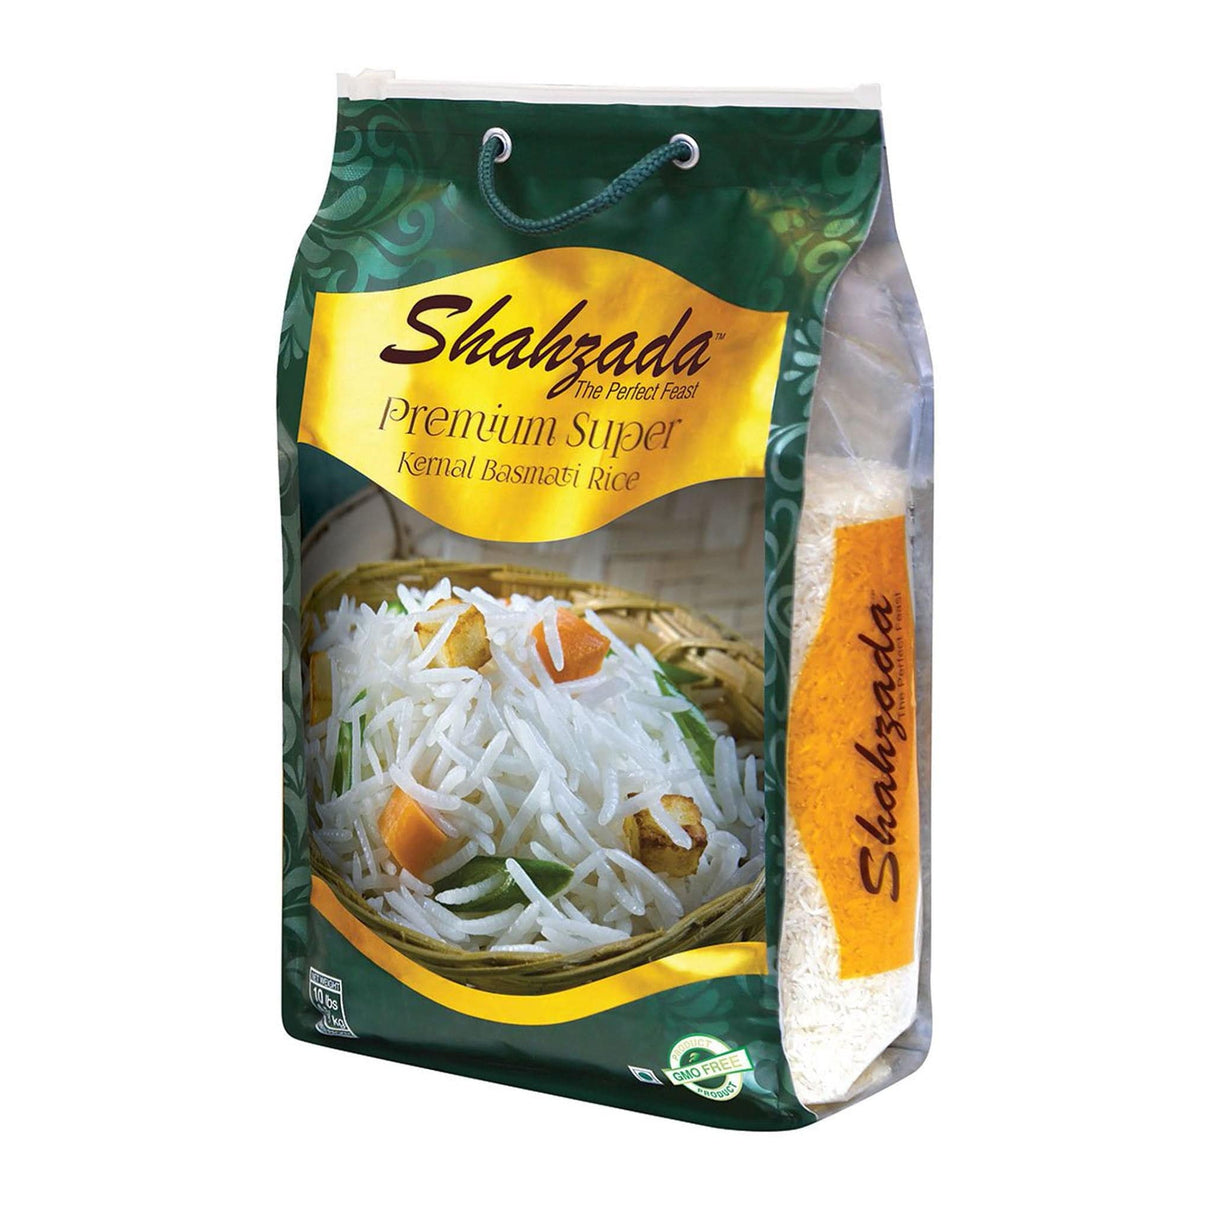 Shahzada Premium Super Kernel Basmati Rice